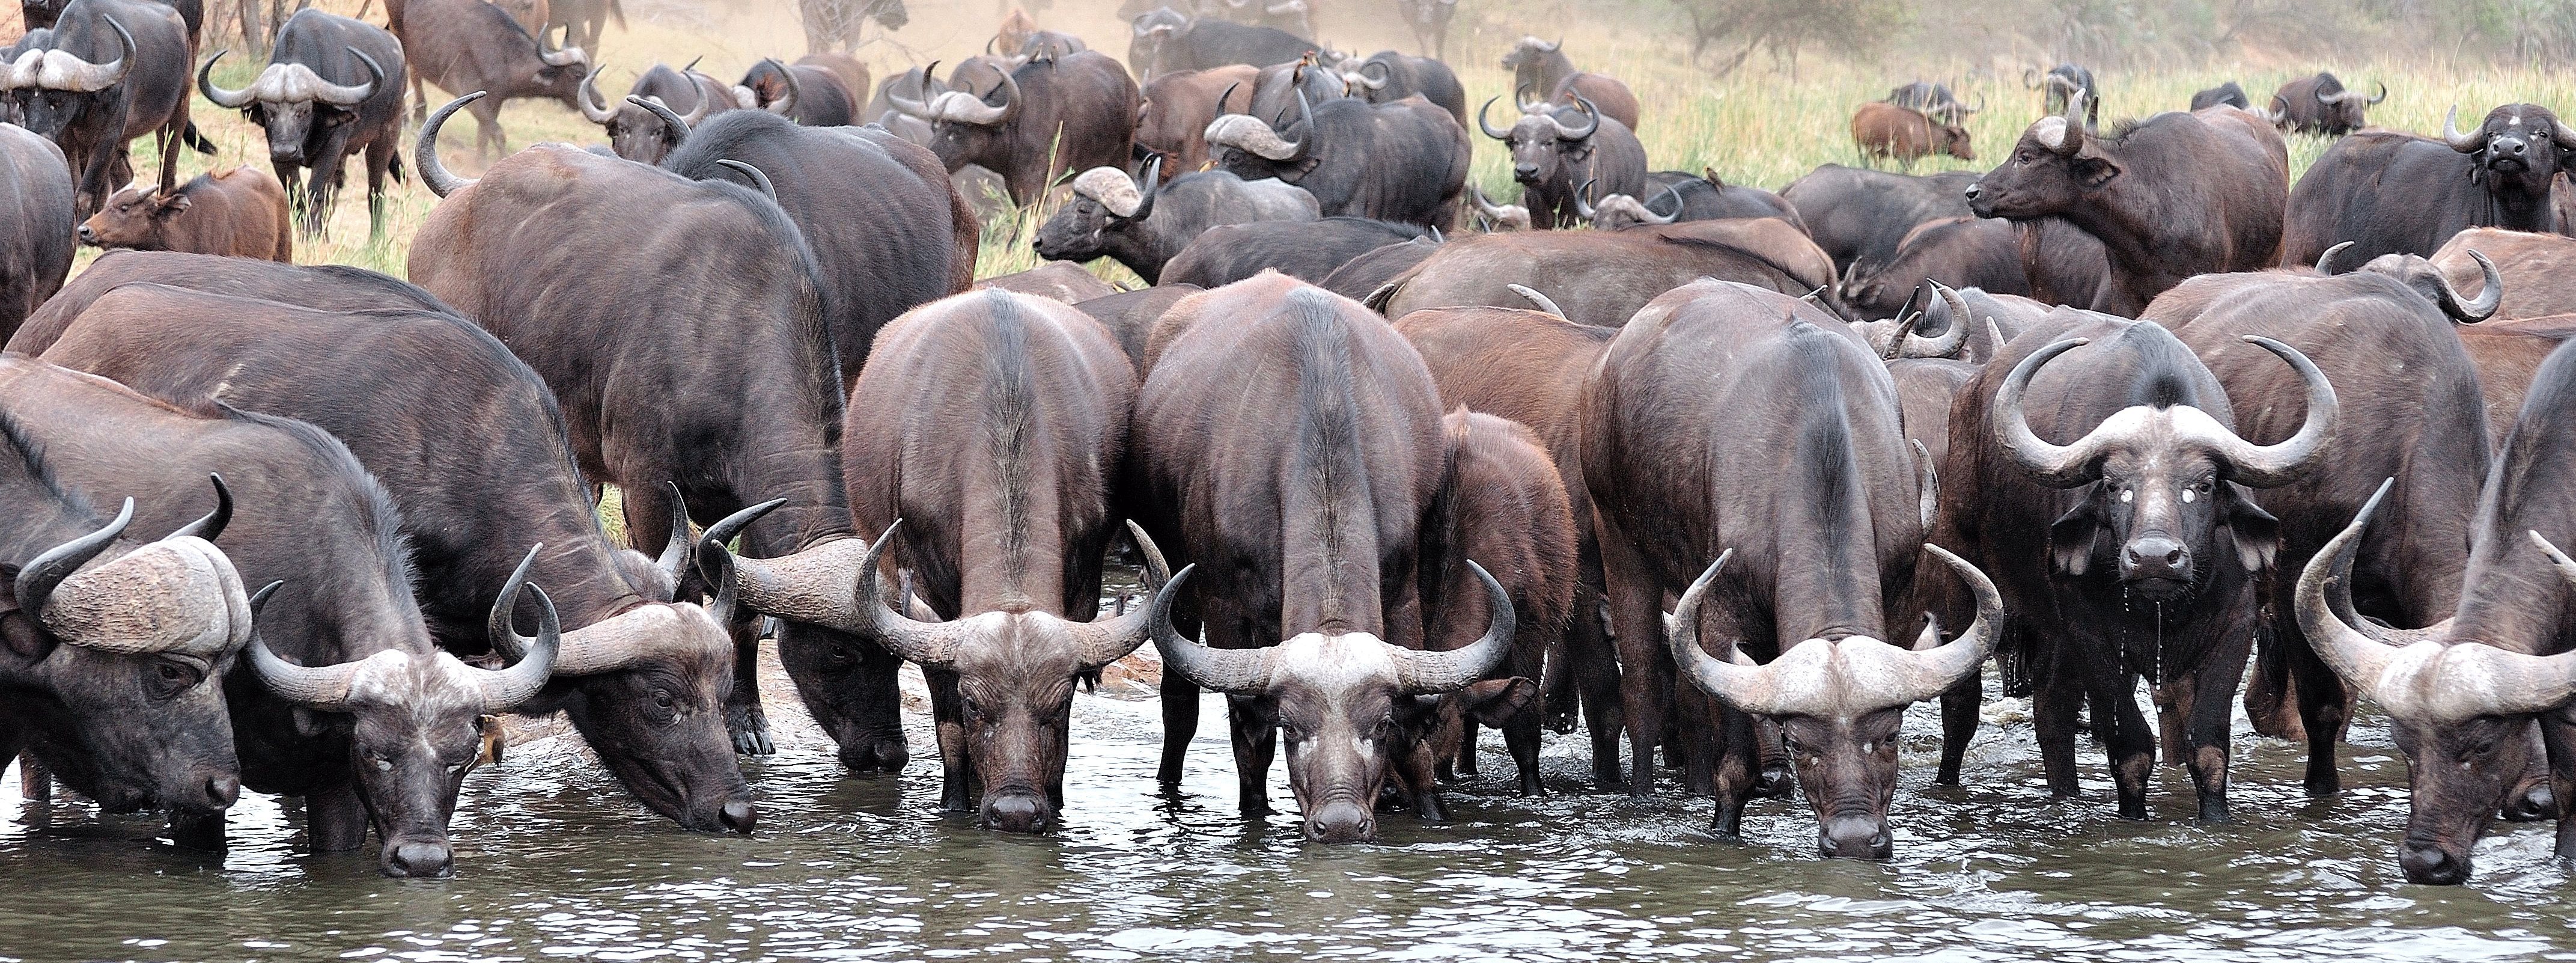 /resource/Images/Tanzania_Kenya/headerimage/buffalo.png